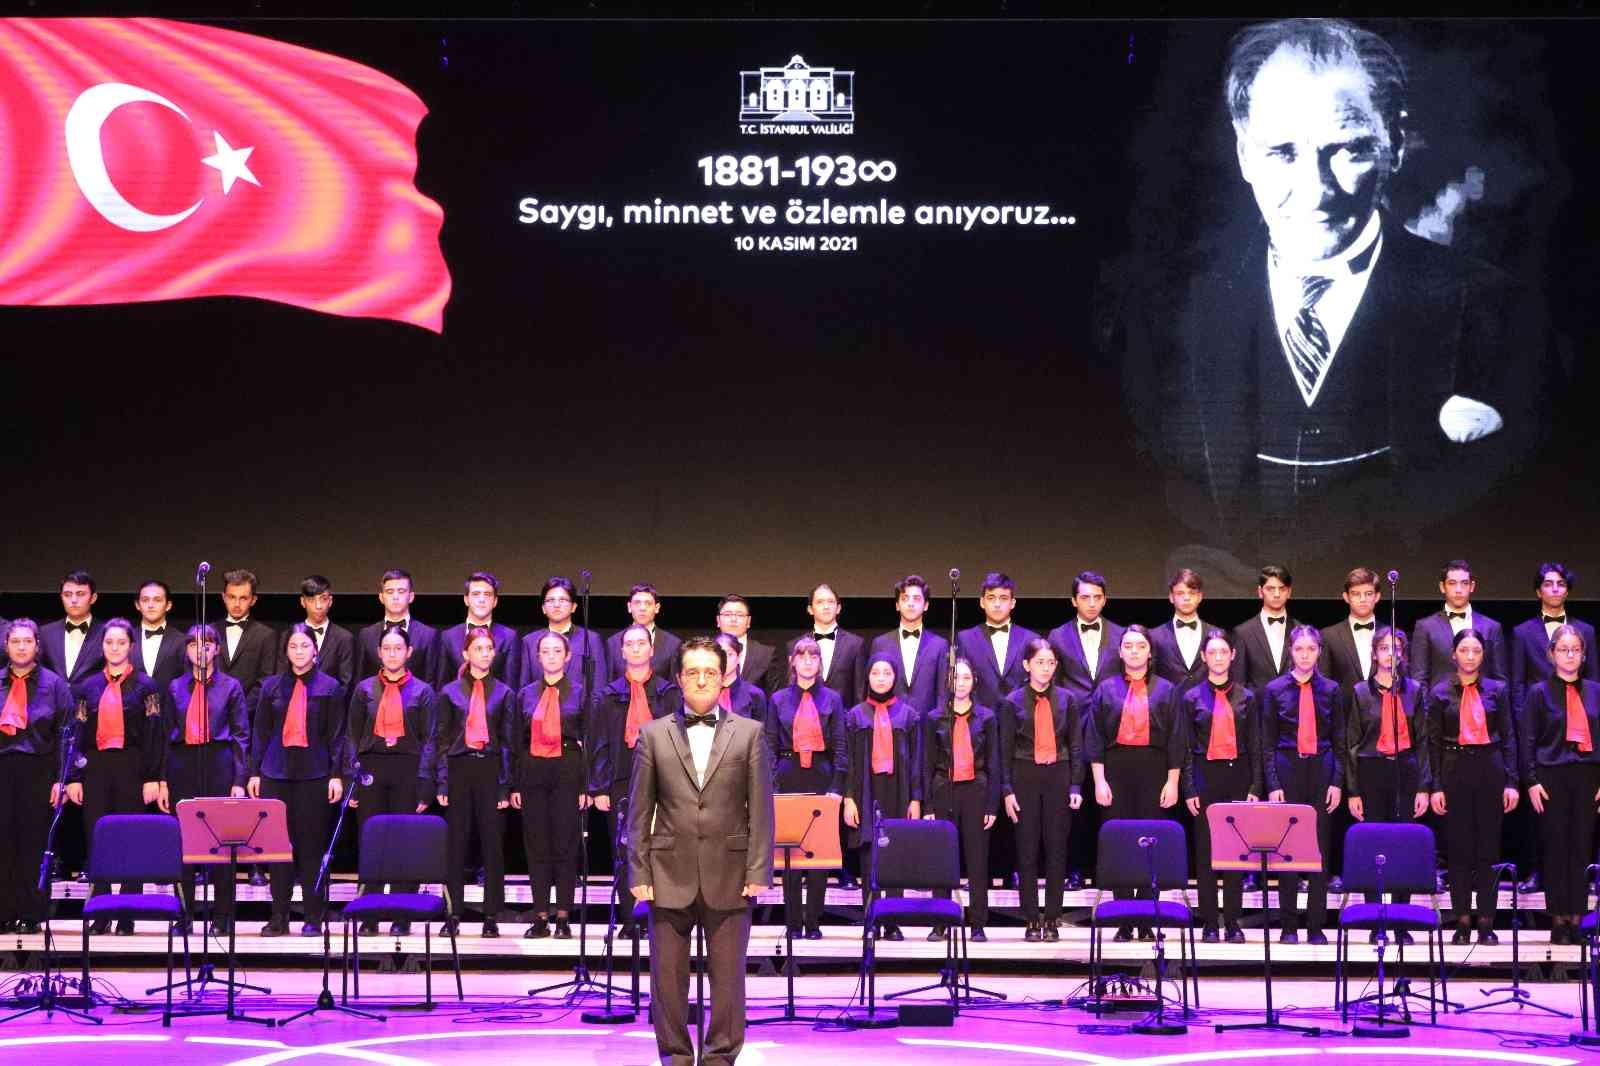 İstanbul Valiliğinden Gazi Mustafa Kemal Atatürk’ü anma töreni #istanbul